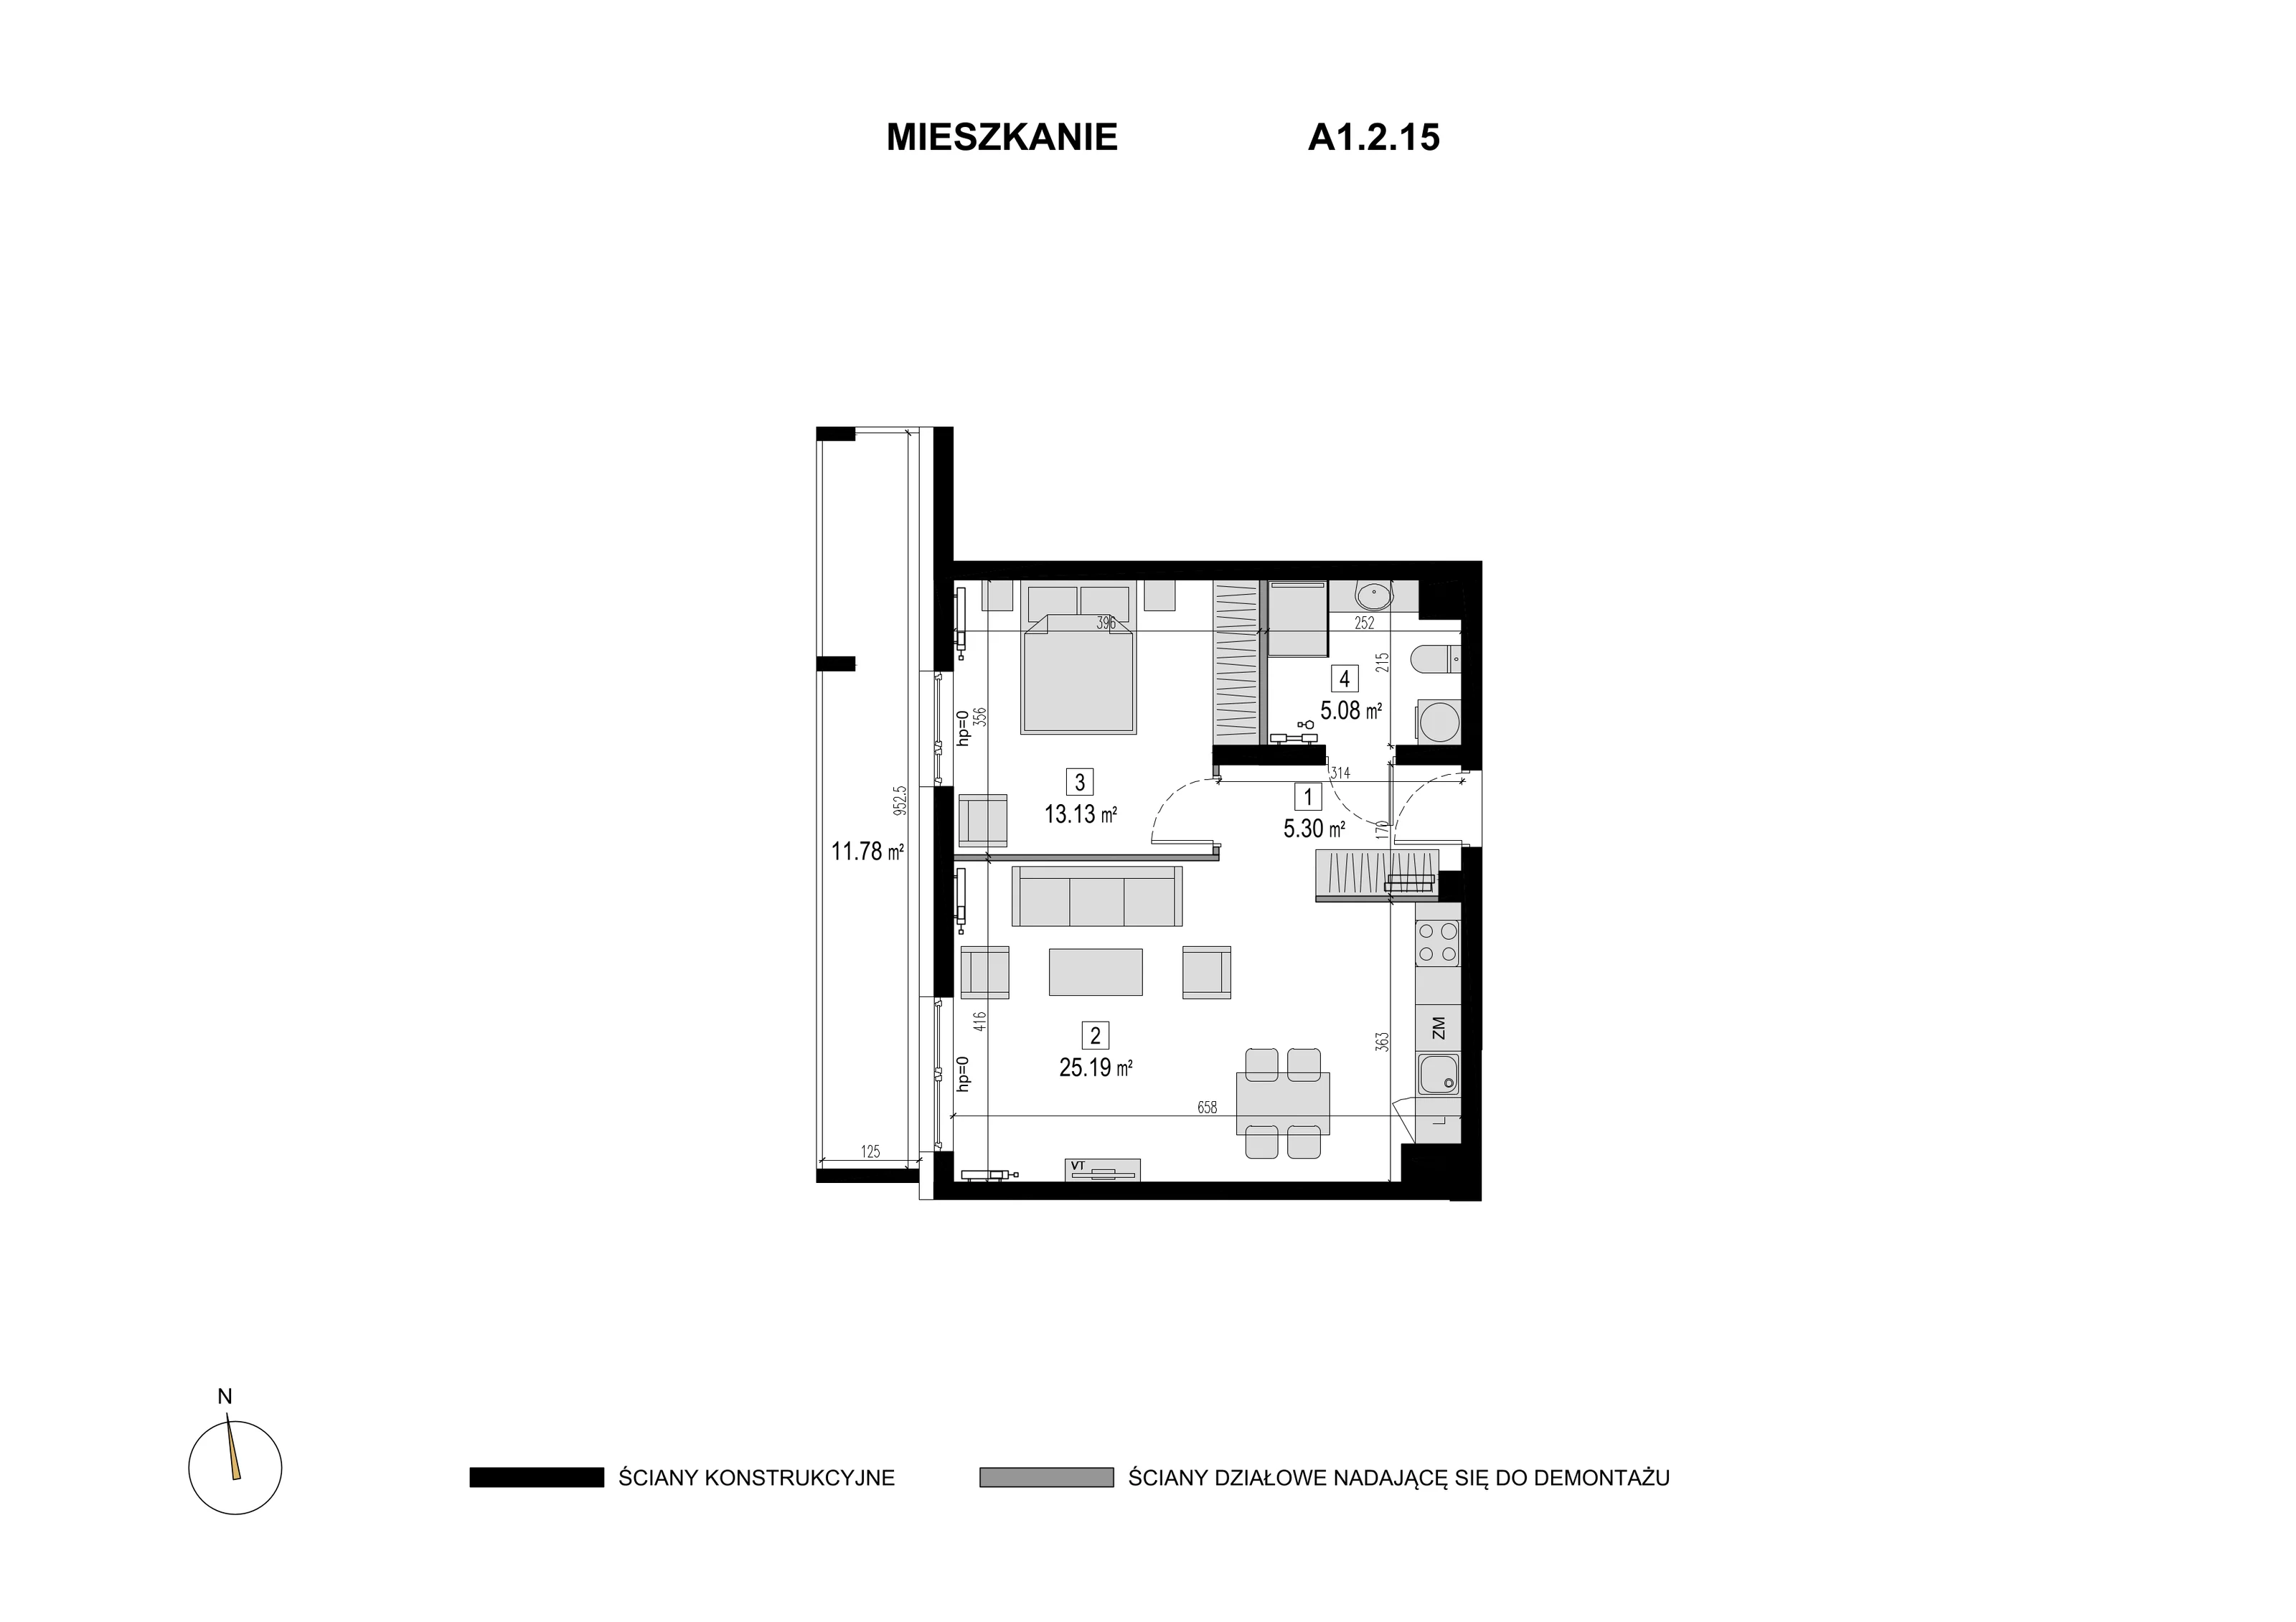 Mieszkanie 48,70 m², piętro 1, oferta nr A1.2.15, Novaforma, Legnica, ul. Chojnowska